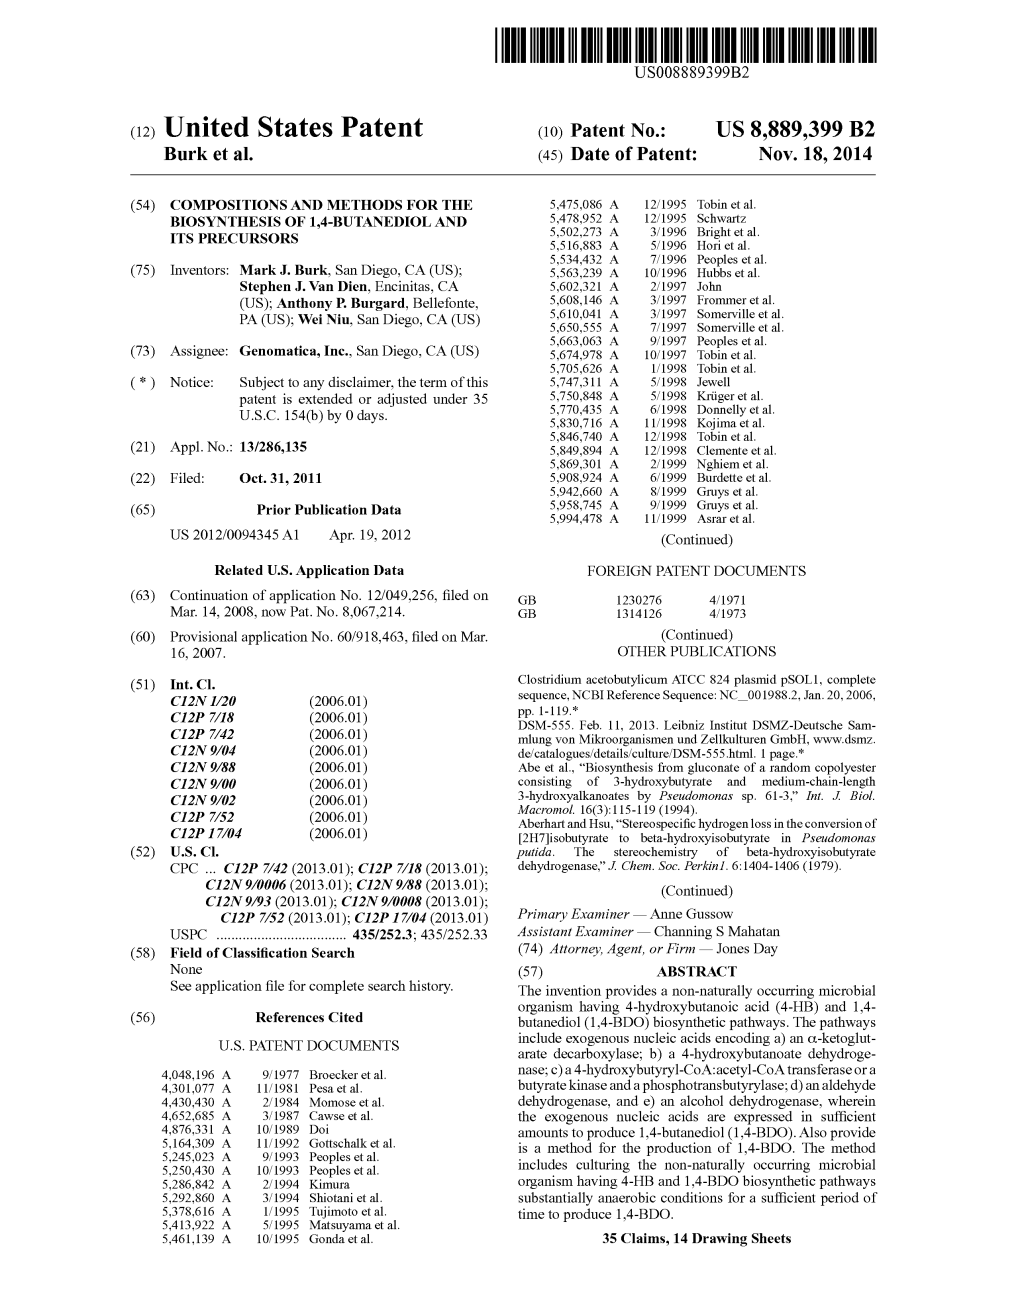 (12) United States Patent (10) Patent No.: US 8,889,399 B2 Burk Et Al